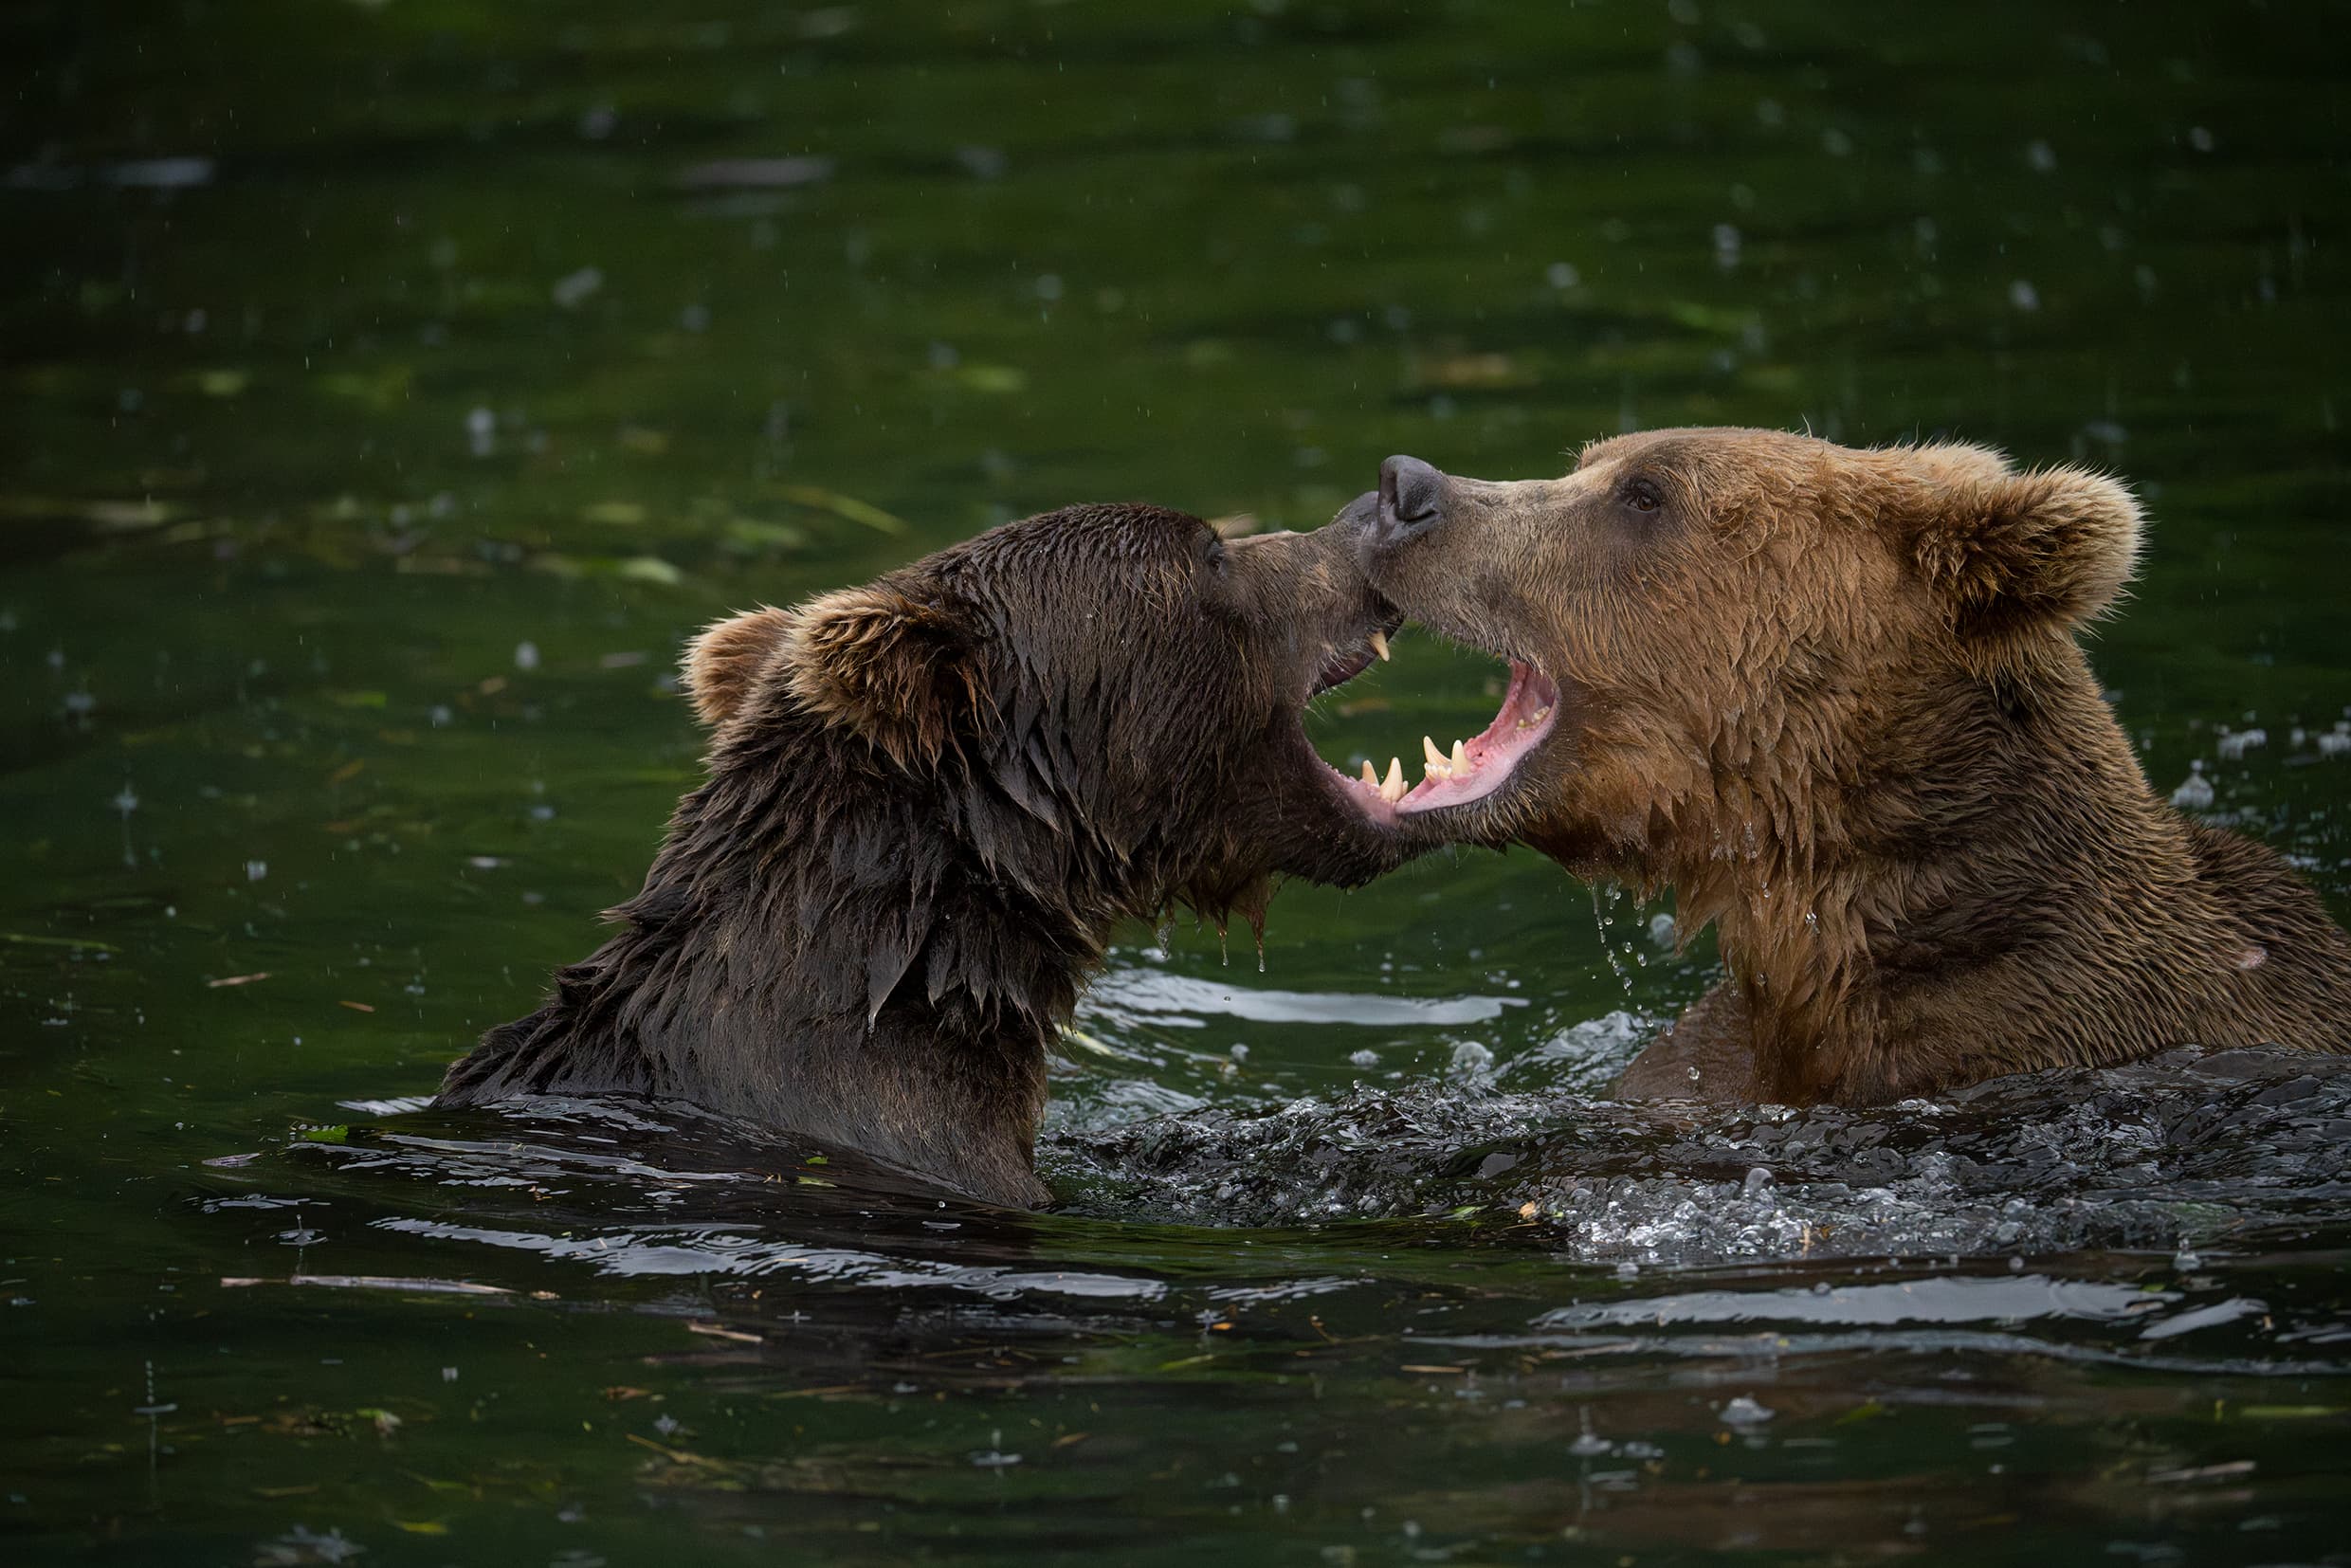 Fotka medvědů ve vodě focená pomocí objektivu Tamron 150-500mm pro Nikon Z